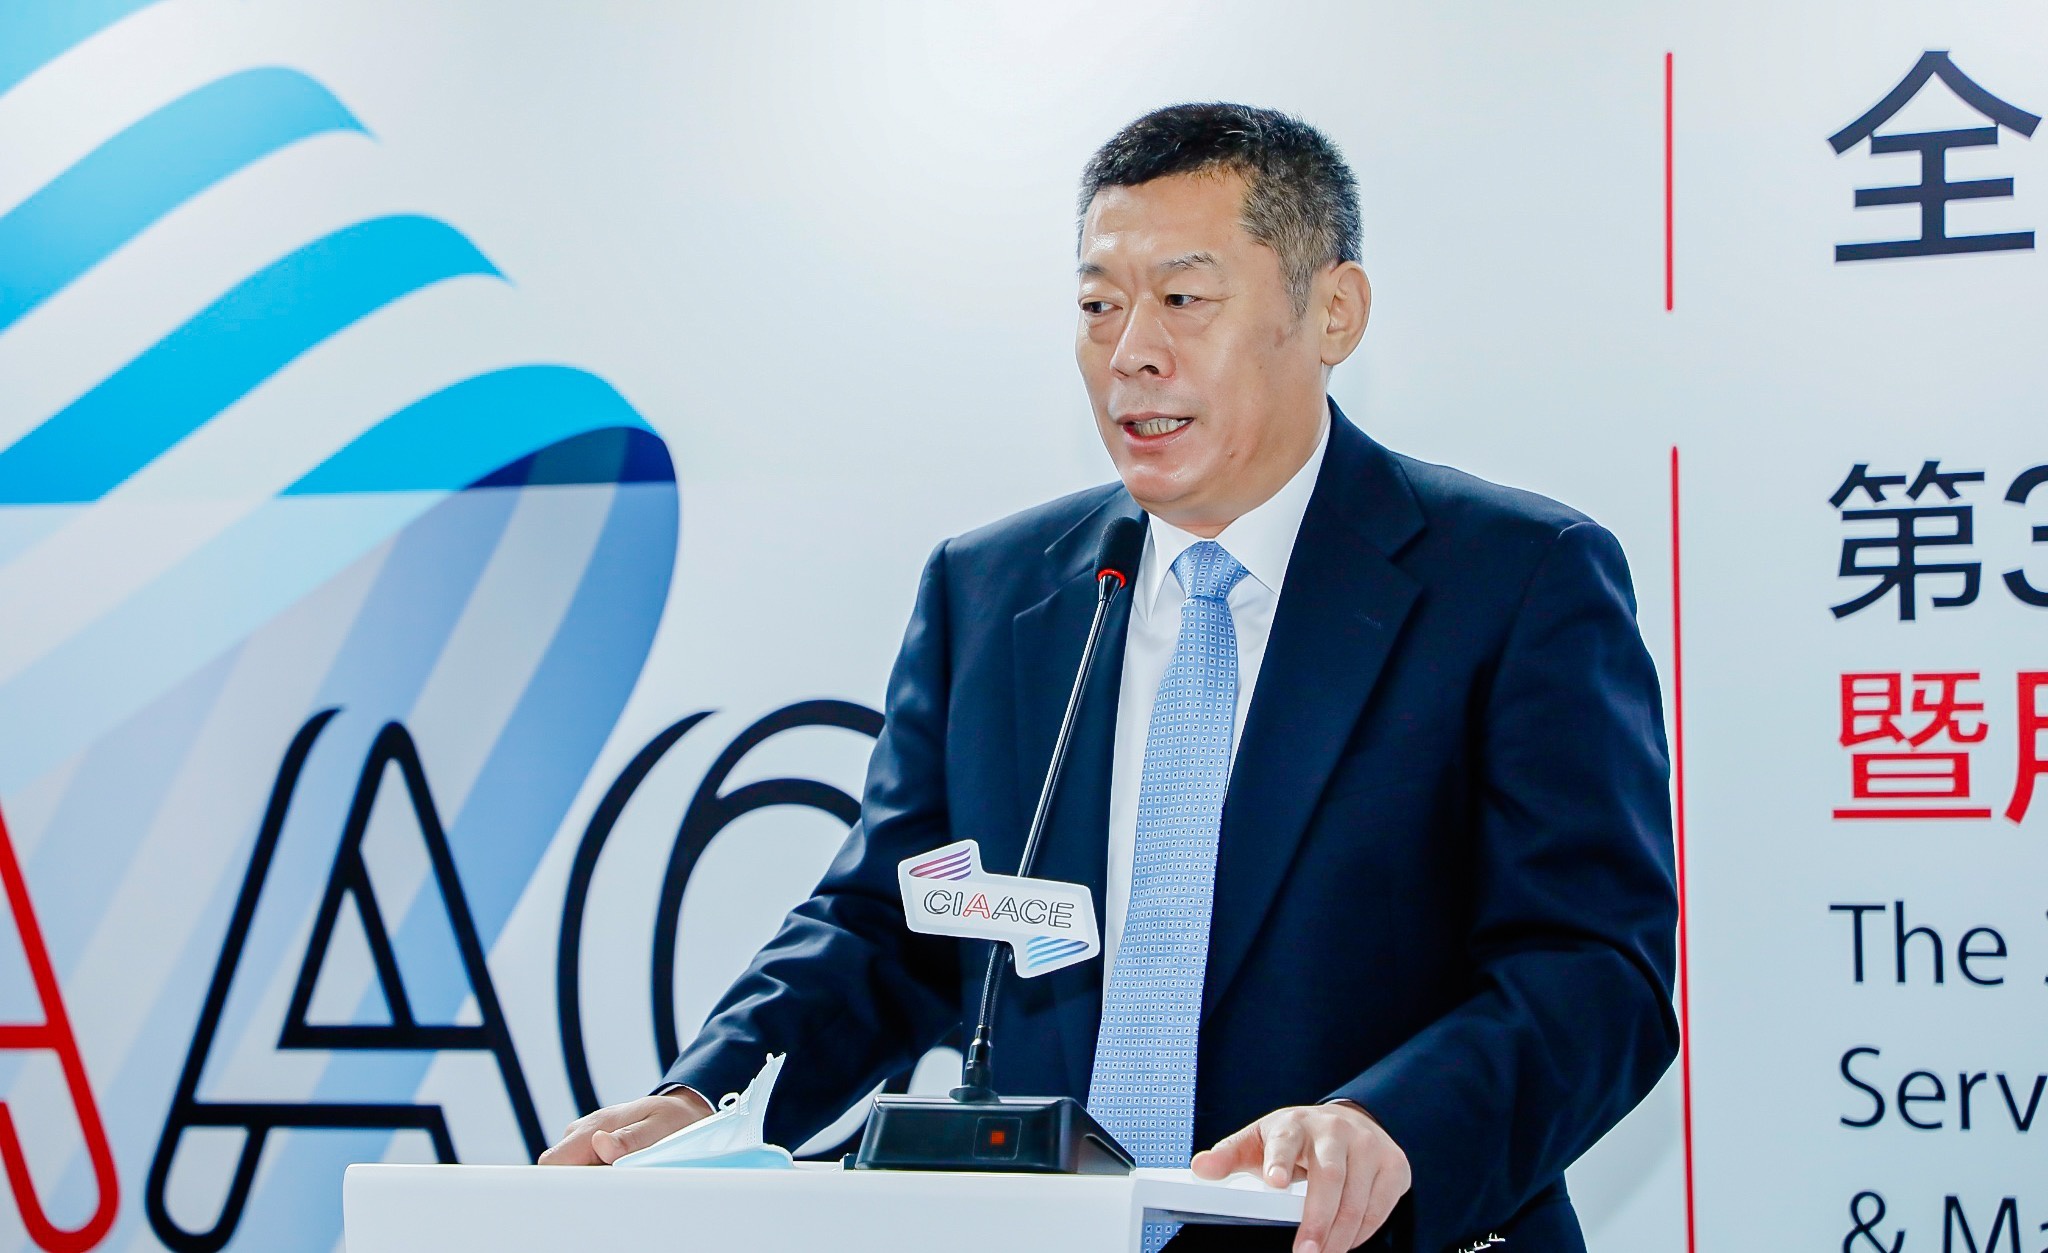 中国国际展览中心集团公司副总裁王晓光发表致辞